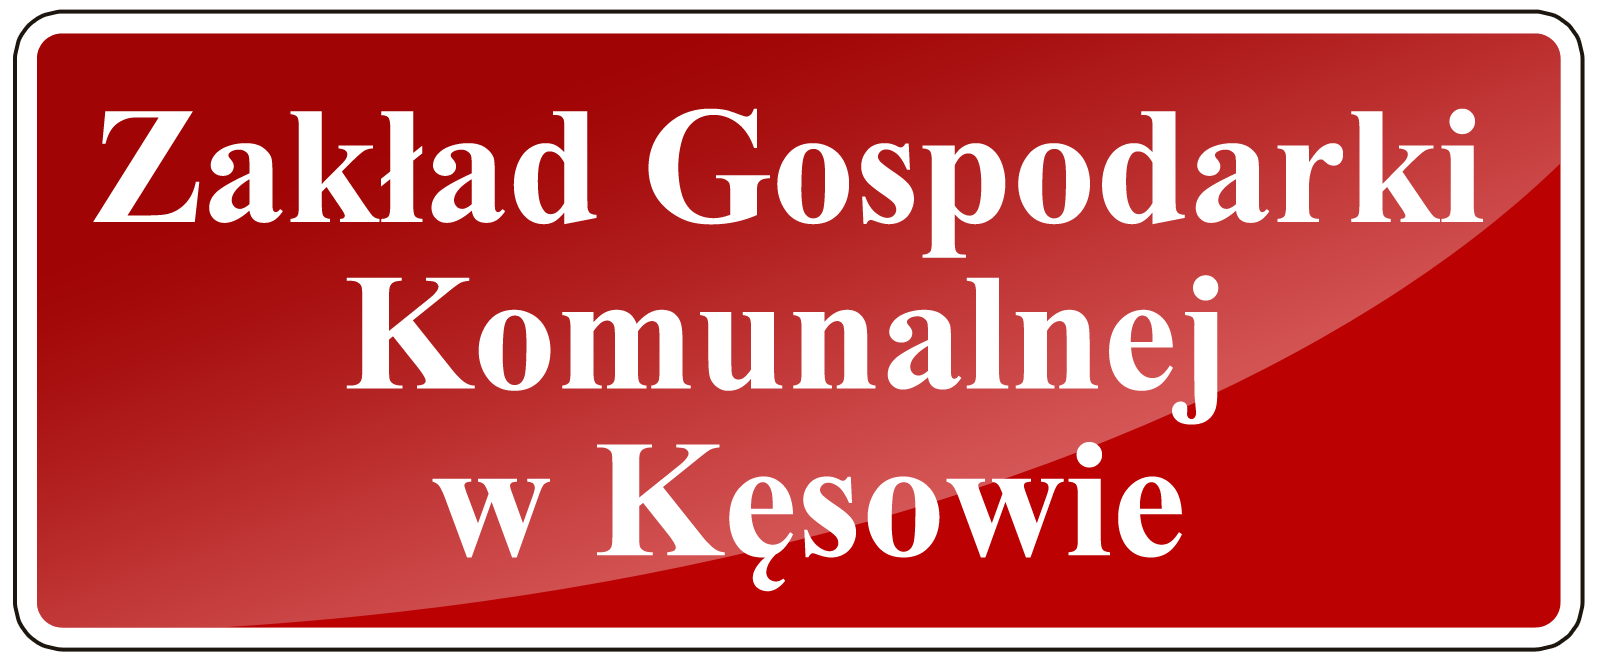 Drugiego maja Zakład Gospodarki Komunalnej w Kęsowie będzie nieczynny